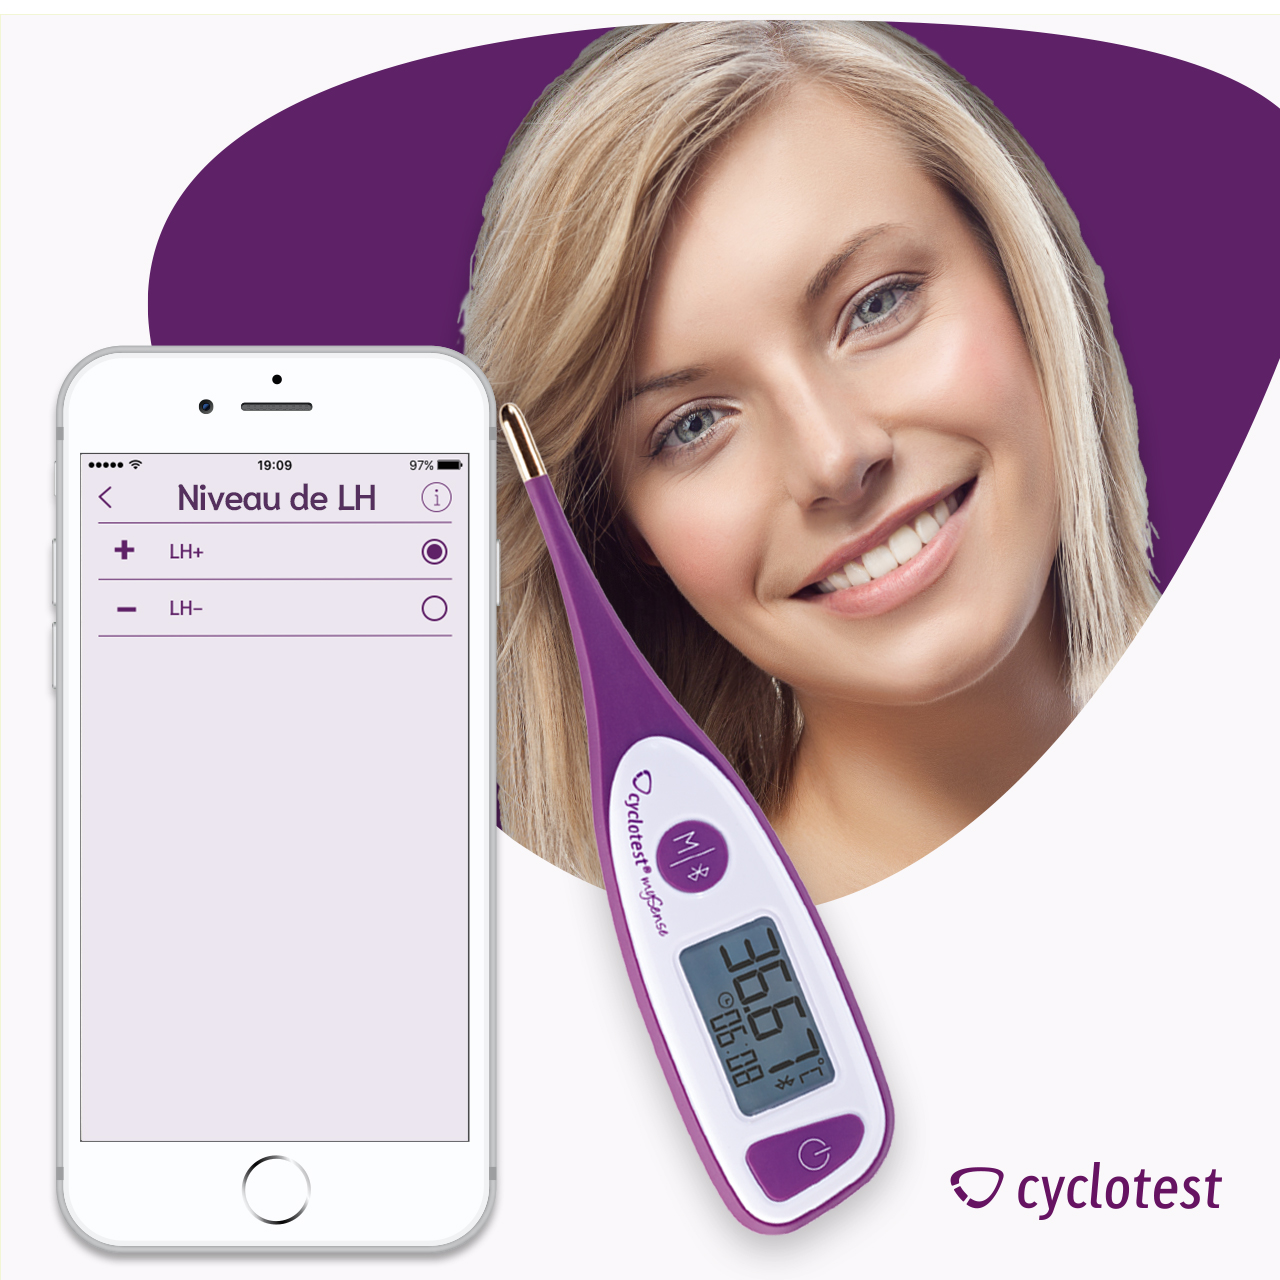 Effectuez un test d'ovulation et saisissez le résultat LH dans l'application mySense.